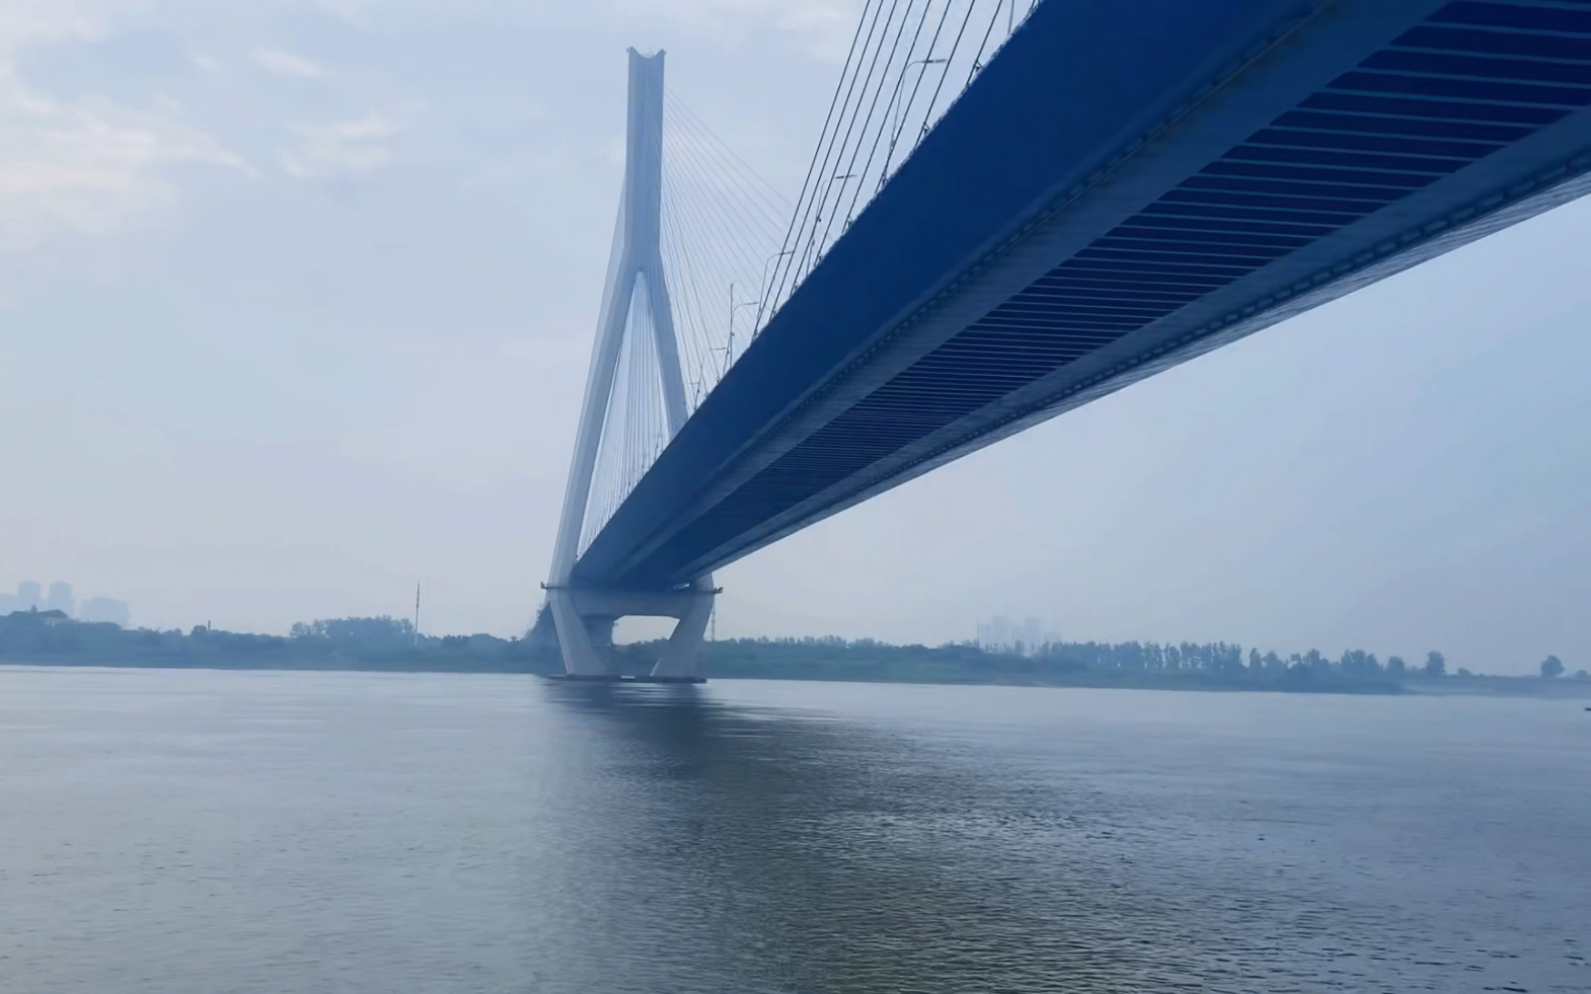 武汉沌口大桥图片